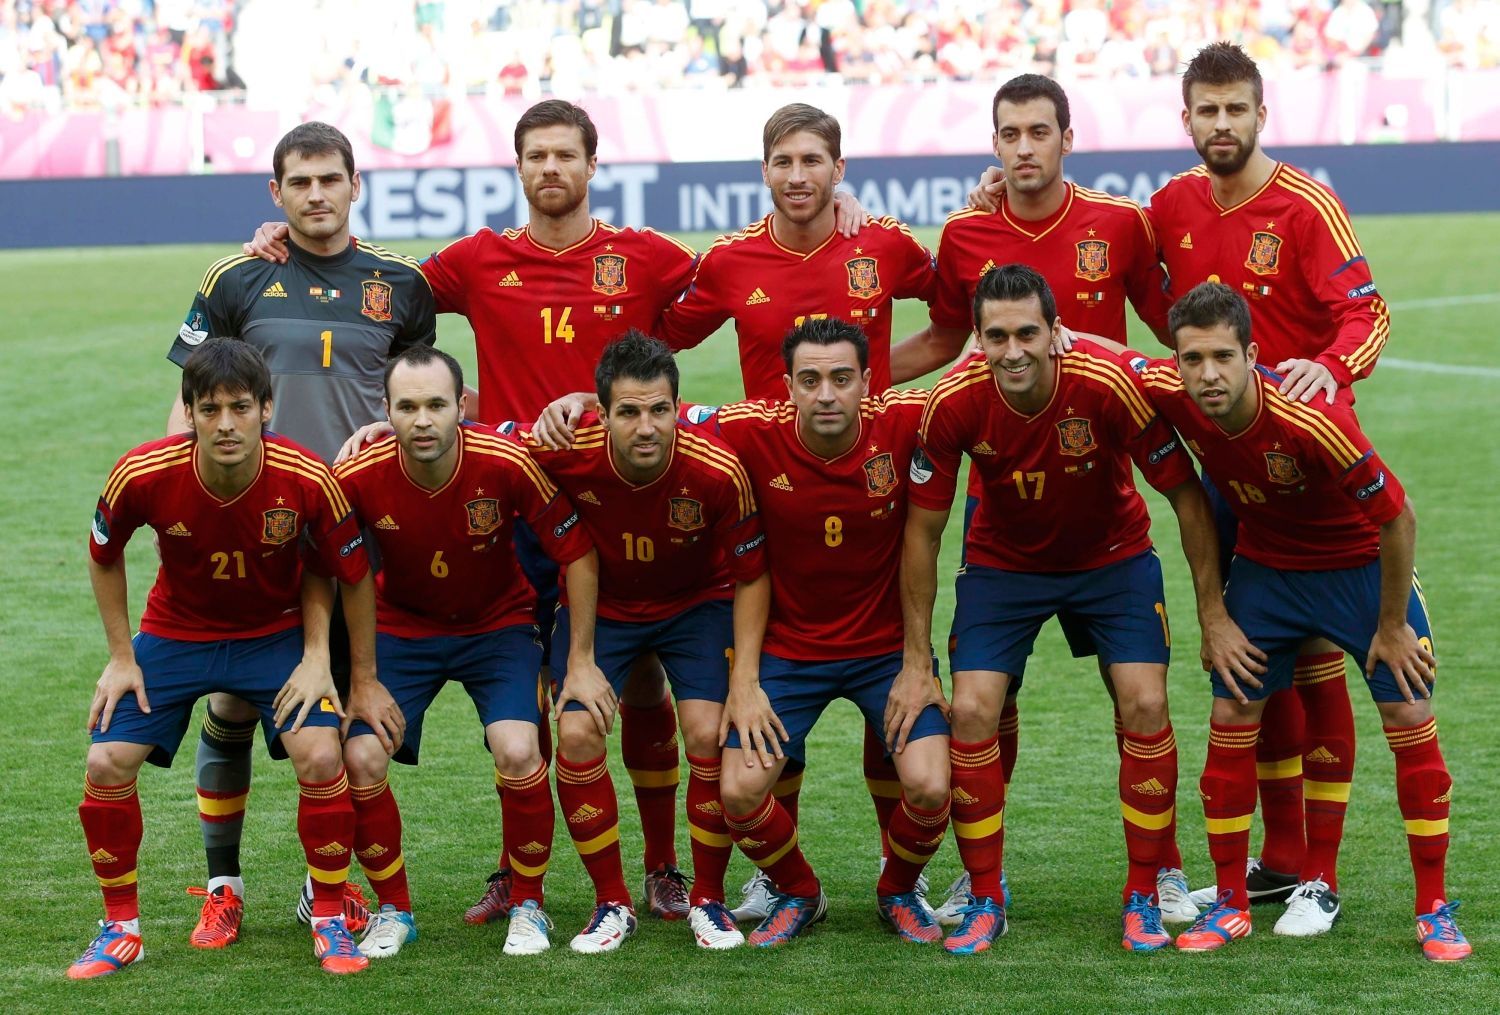 Španělský tým před utkáním základní skupiny mezi Španělskem a Itálií na Euru 2012